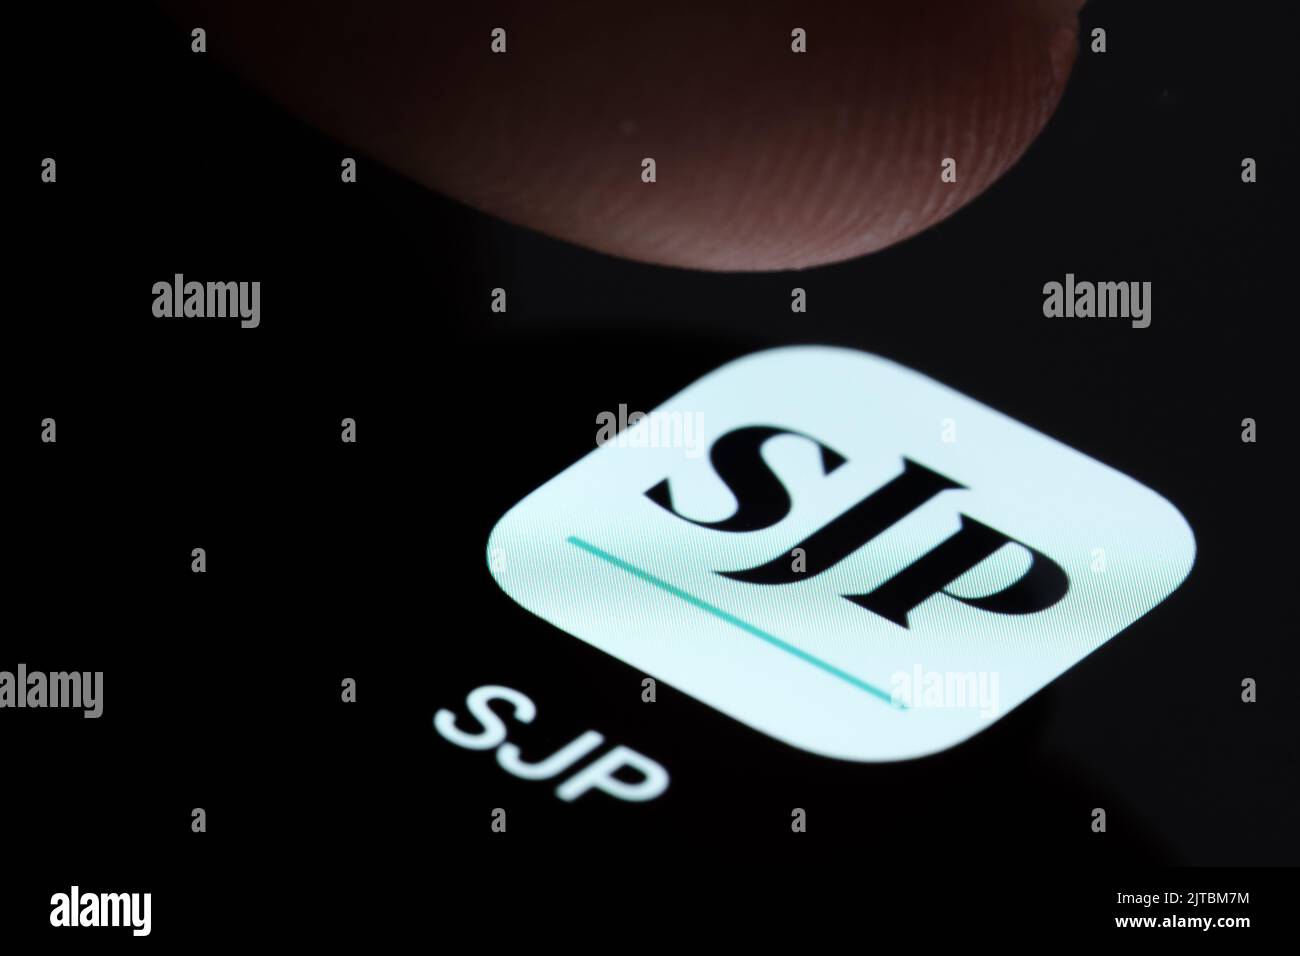 SJP-App auf dem Smartphone-Bildschirm gesehen und Finger kurz vor dem Berühren. St. James's Place (SJP) ist ein Beratungsunternehmen für Finanzexperten. Stafford, Großbritannien Stockfoto